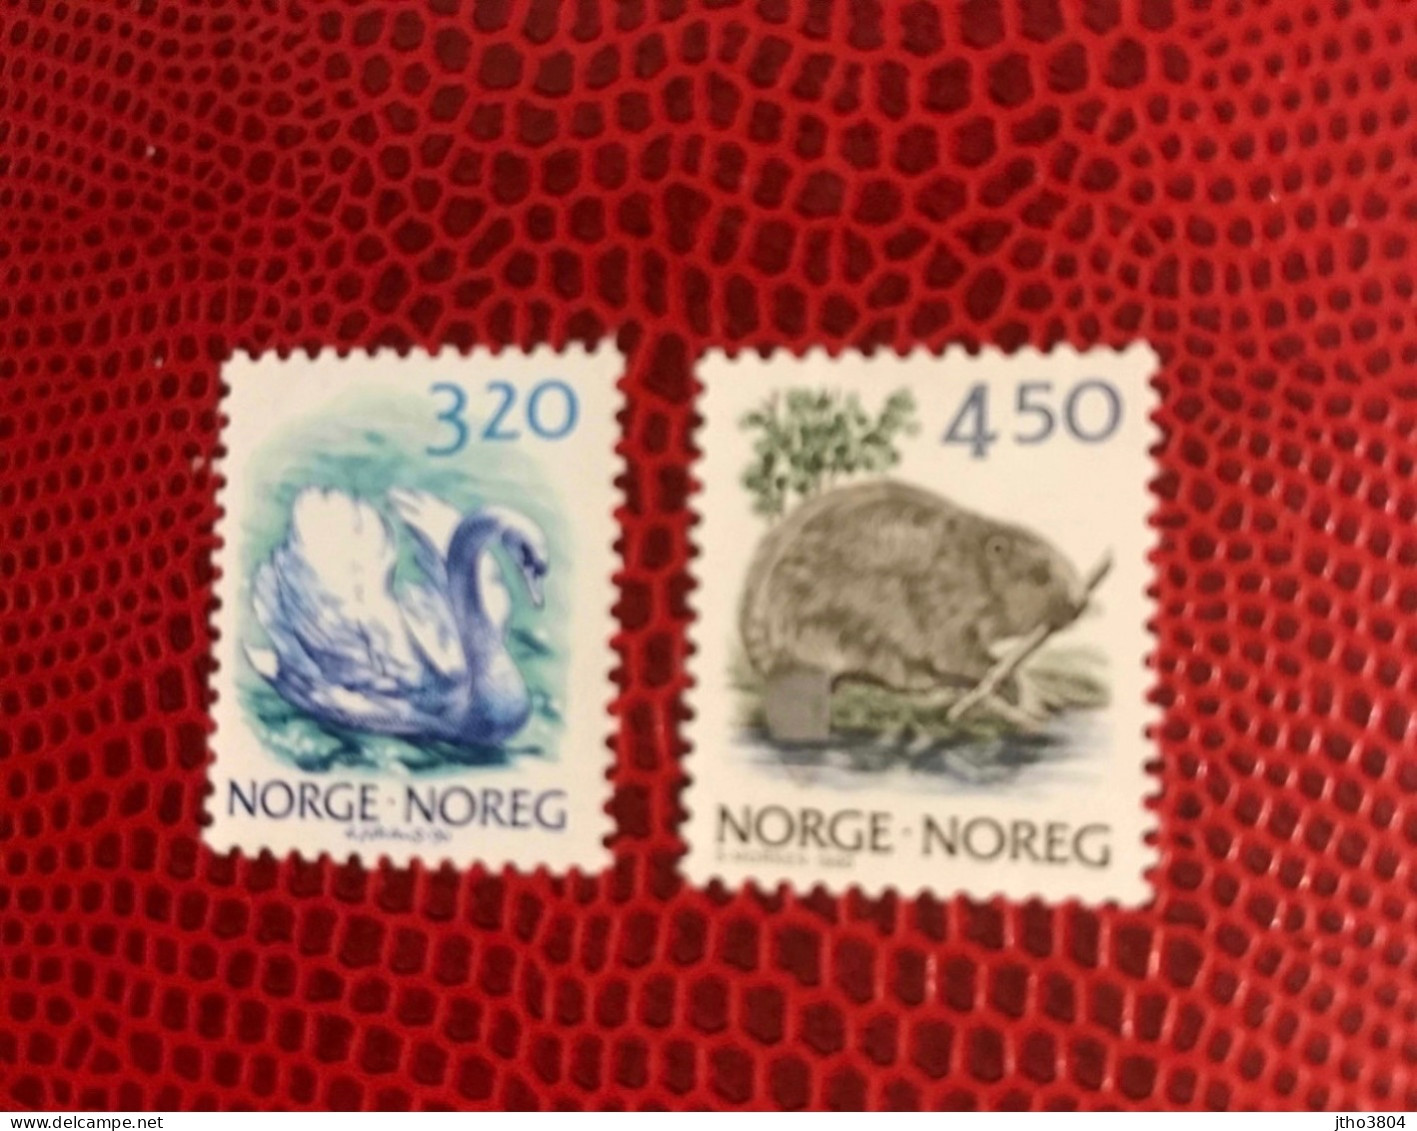 NORVÈGE NORWEGEN 1990 2v Neuf MNH ** YT 997 998 Pájaro Bird Pássaro Vogel Ucello Oiseau NORWAY NORGE NOREK - Schwäne